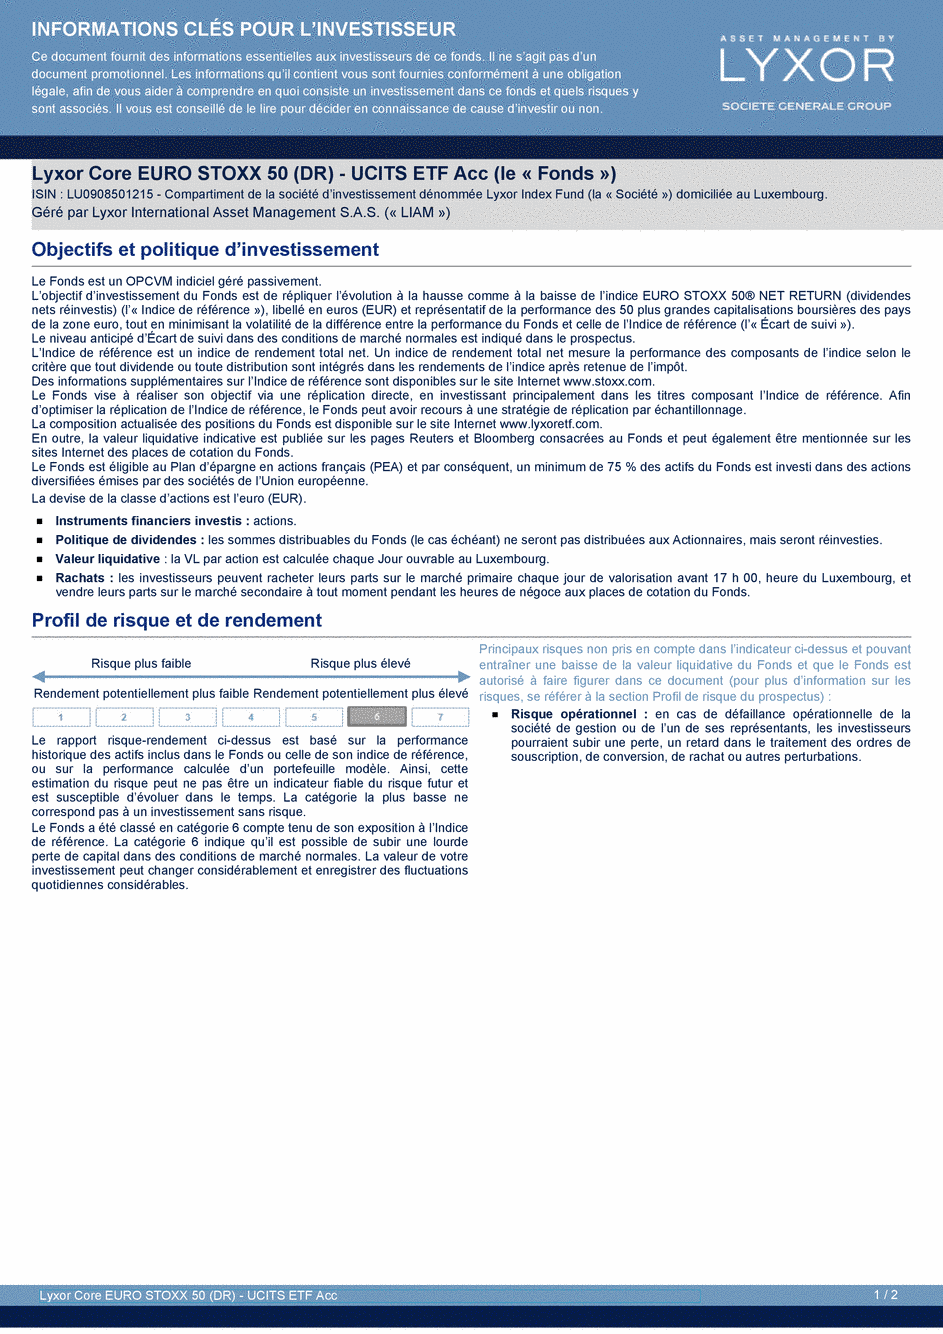 DICI Lyxor Core EURO STOXX 50 (DR) - UCITS ETF Acc - 19/02/2021 - Français